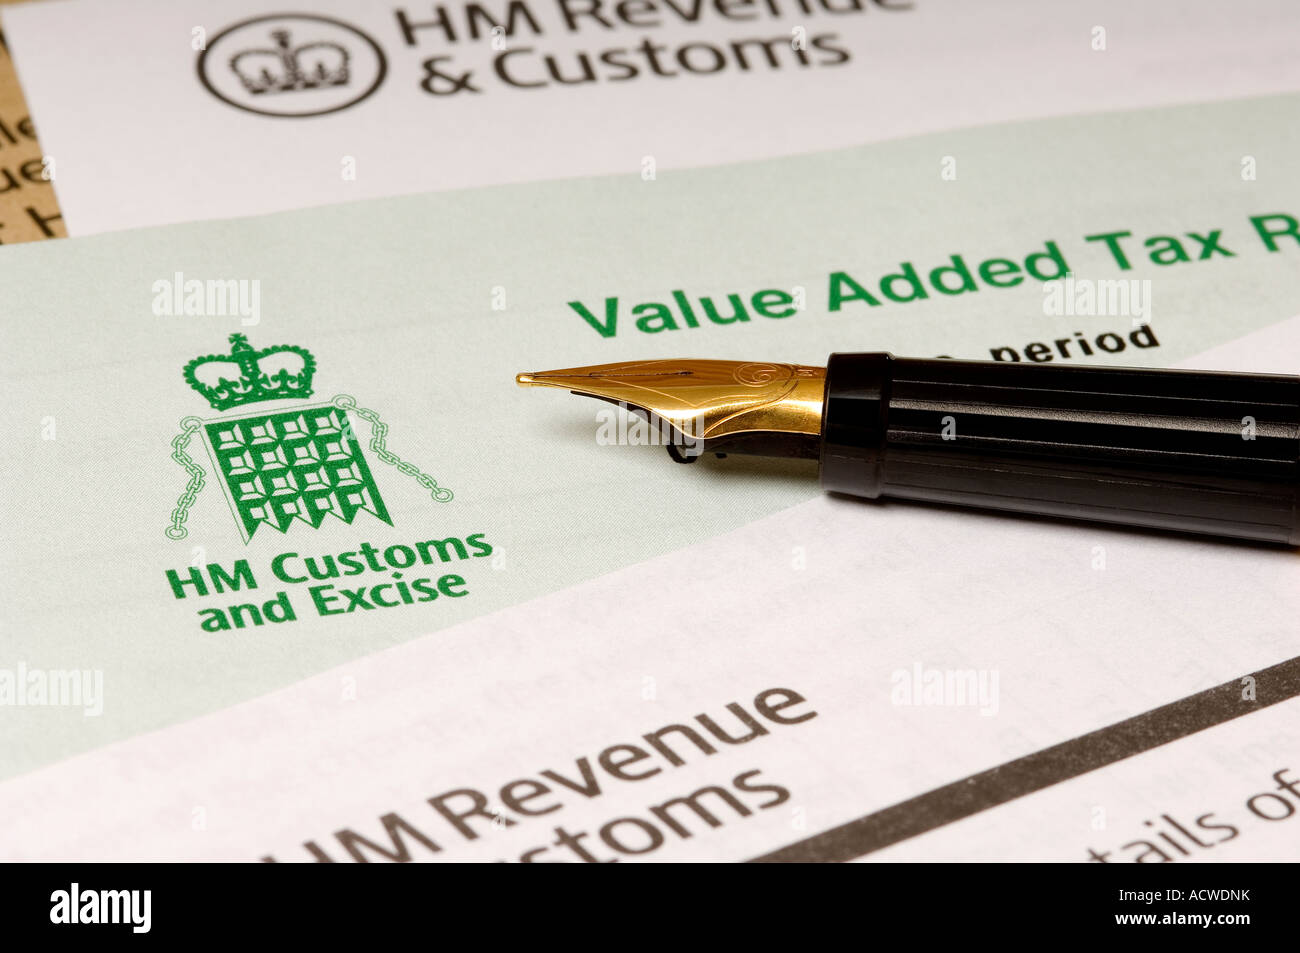 HM Recettes et valeur des douanes taxe sur la valeur ajoutée lettres de déclaration de TVA et stylo plume HMRC Angleterre Royaume-Uni Grande-Bretagne Banque D'Images